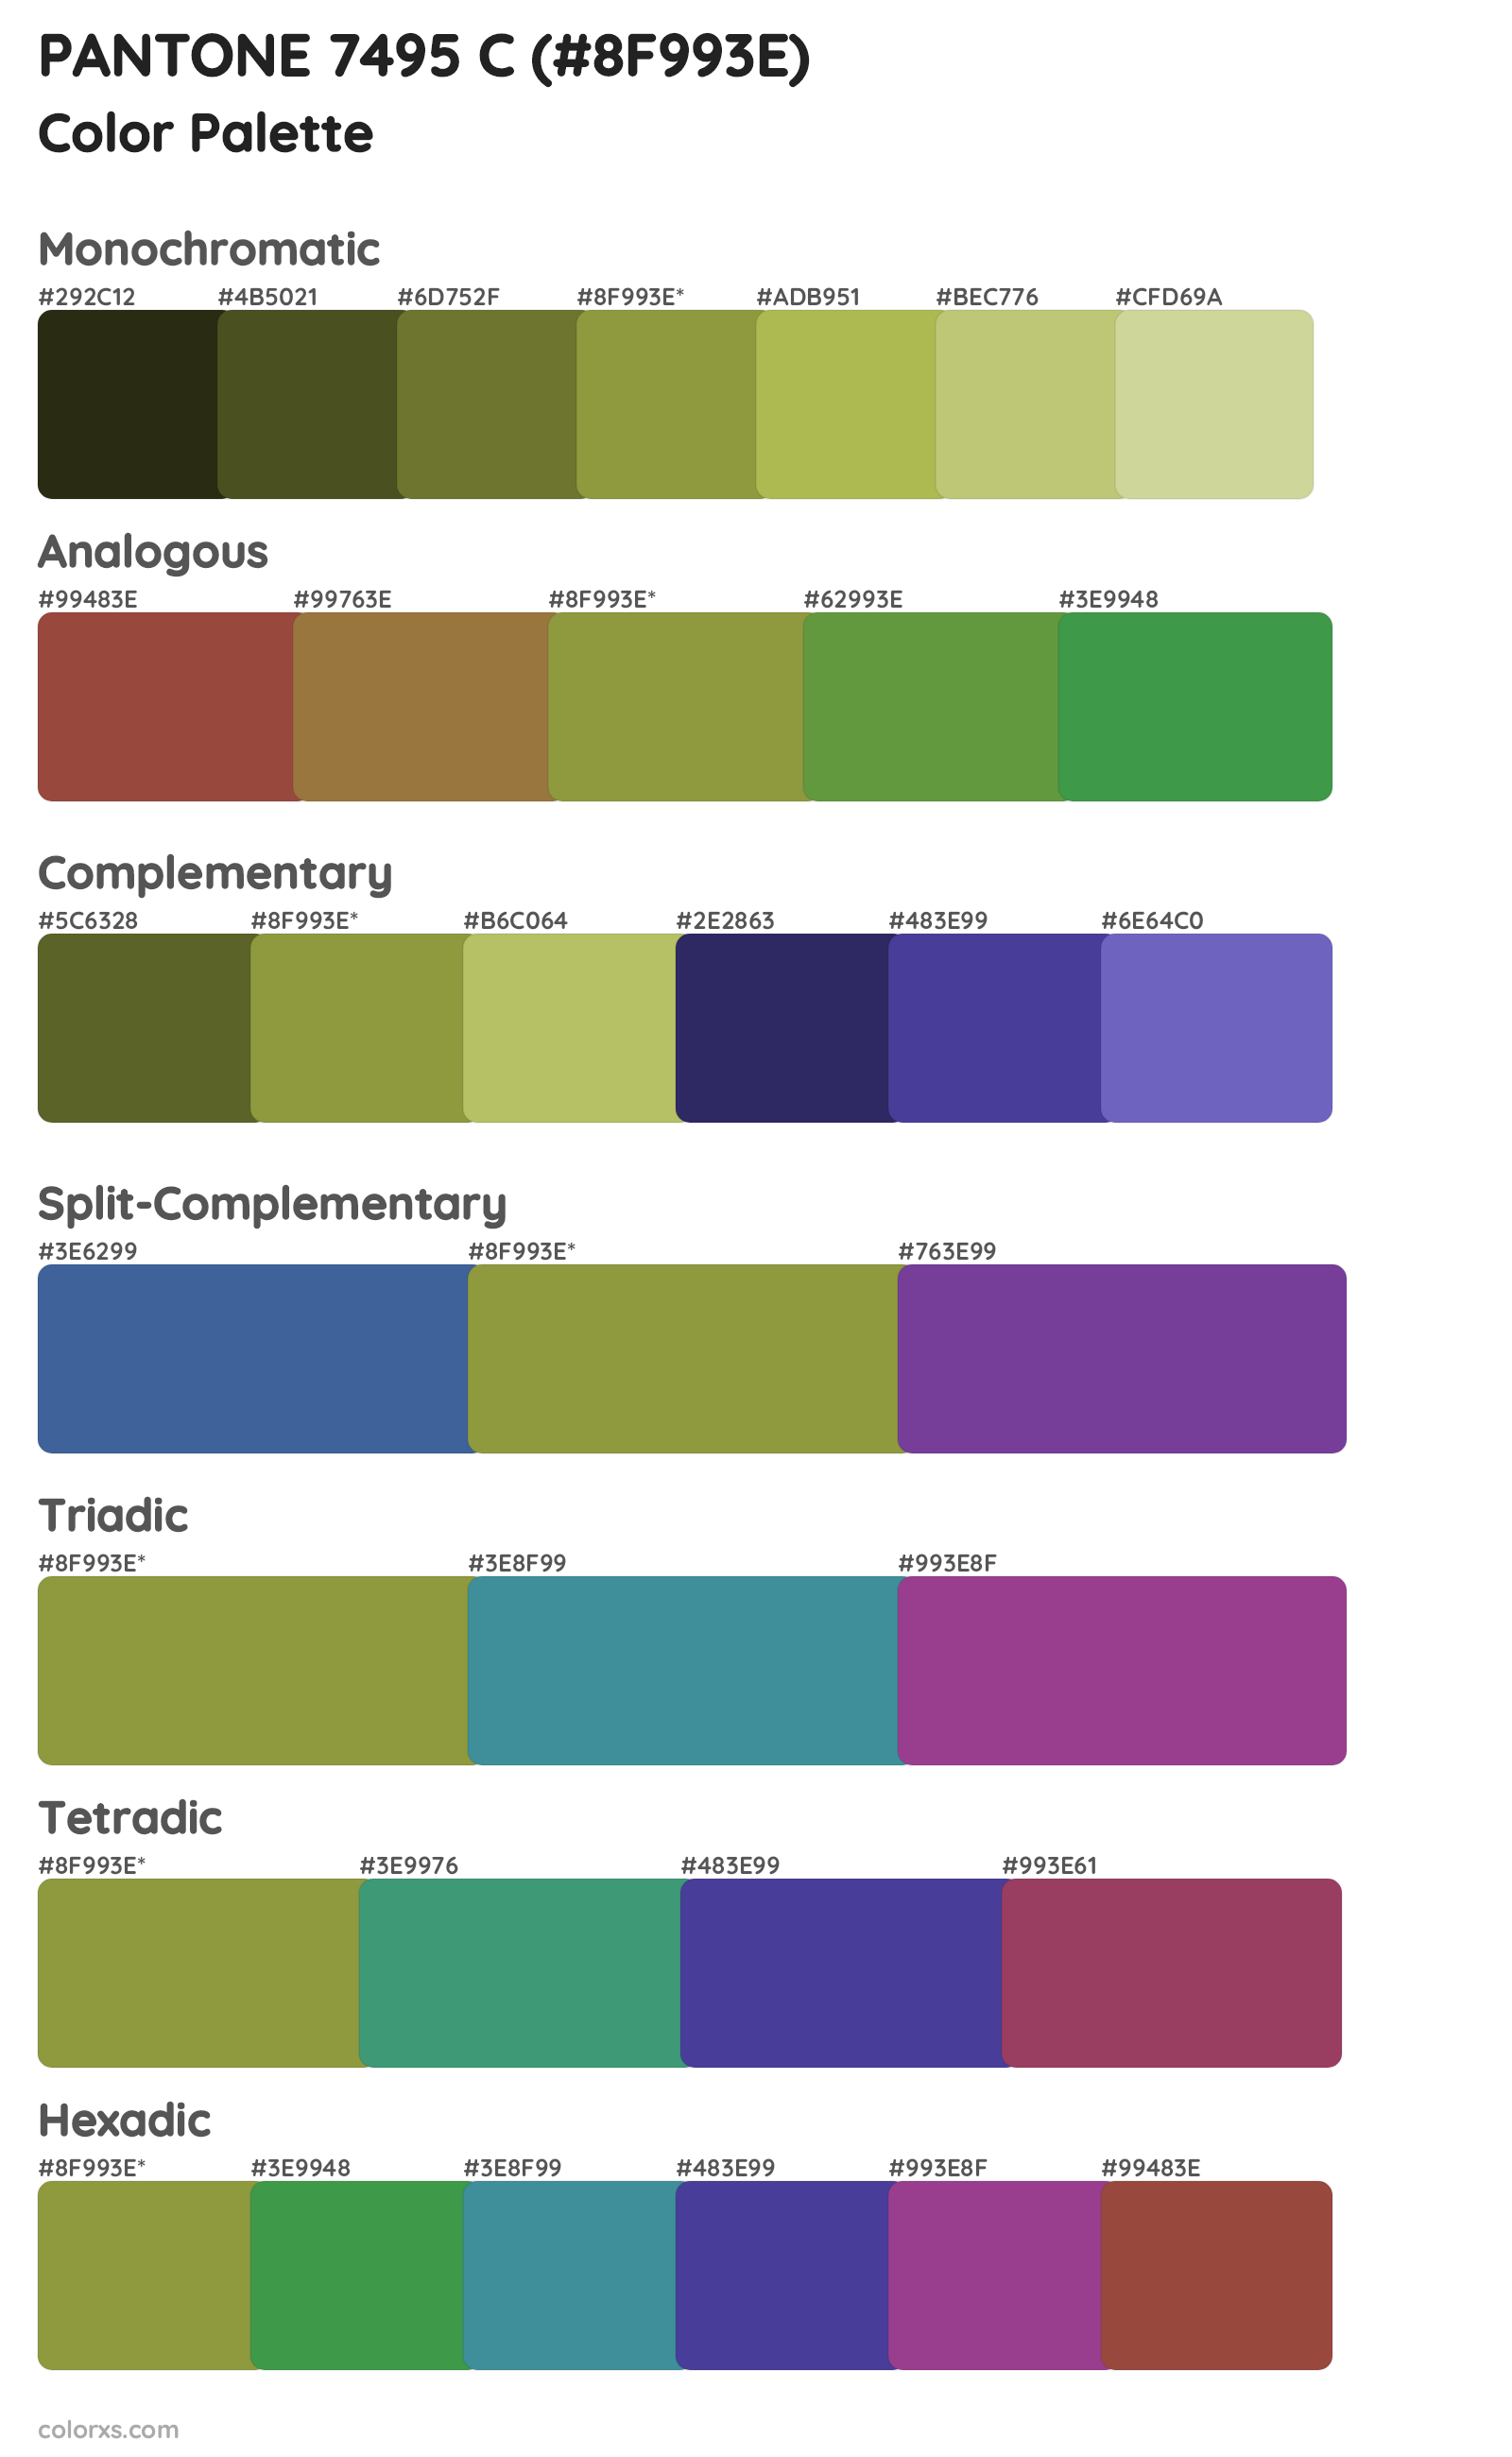 PANTONE 7495 C Color Scheme Palettes